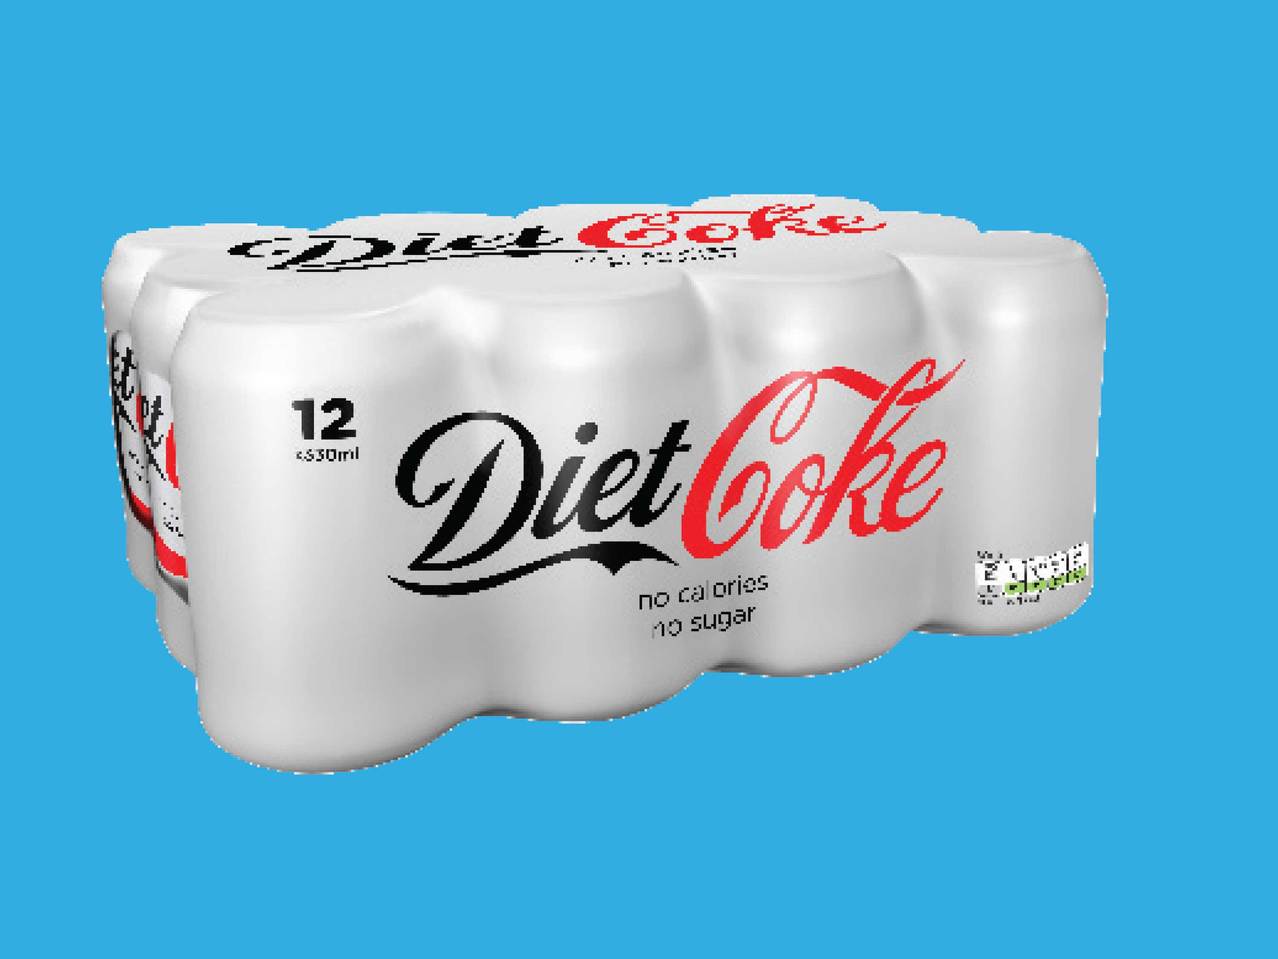 COCA-COLA Regular/ Diet Coke